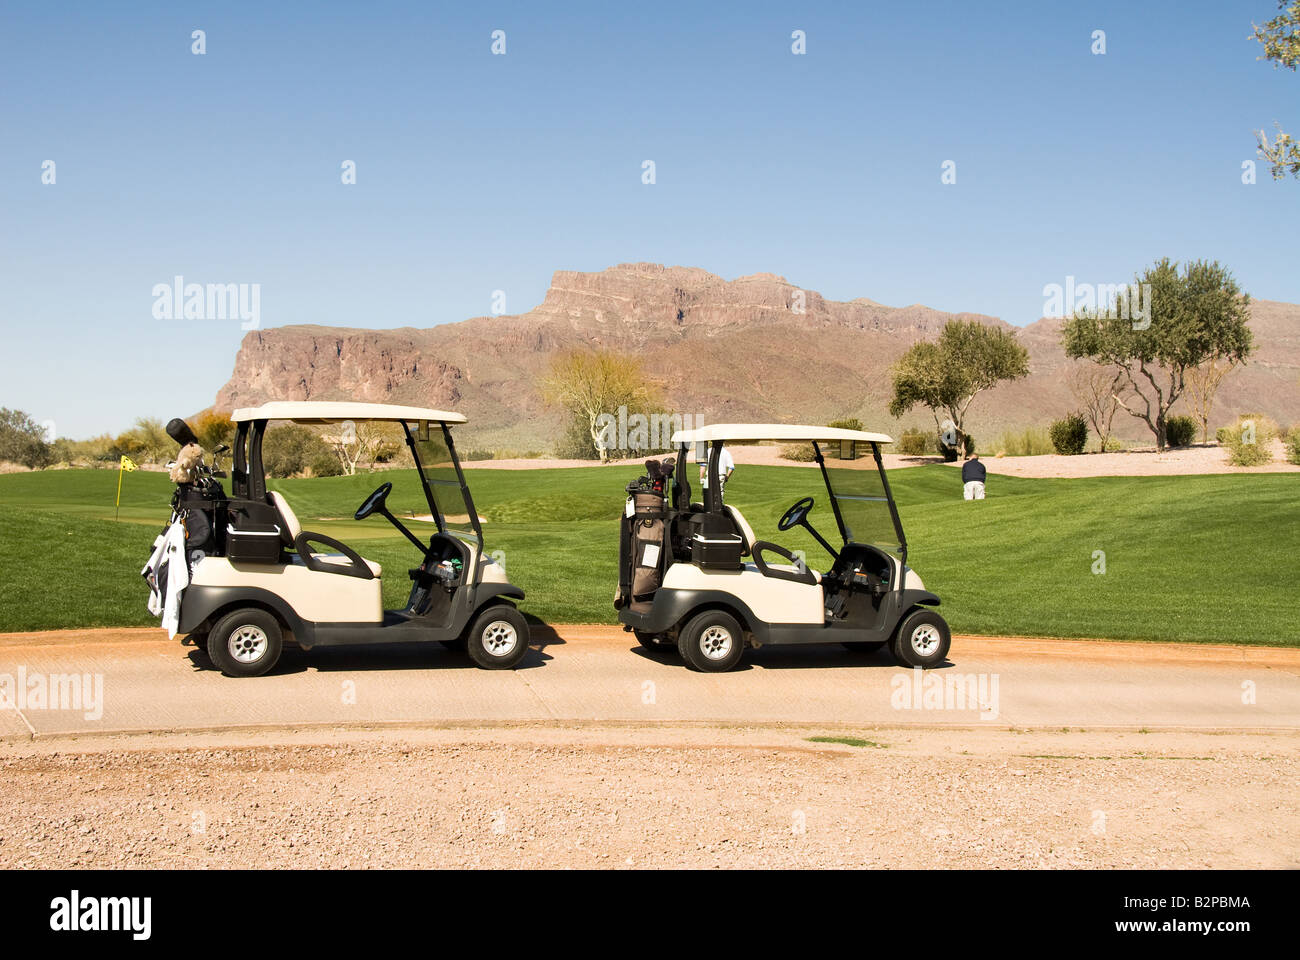 Un parcours de golf panoramique avec deux voiturettes de golf pendant une chaude journée d'été Banque D'Images